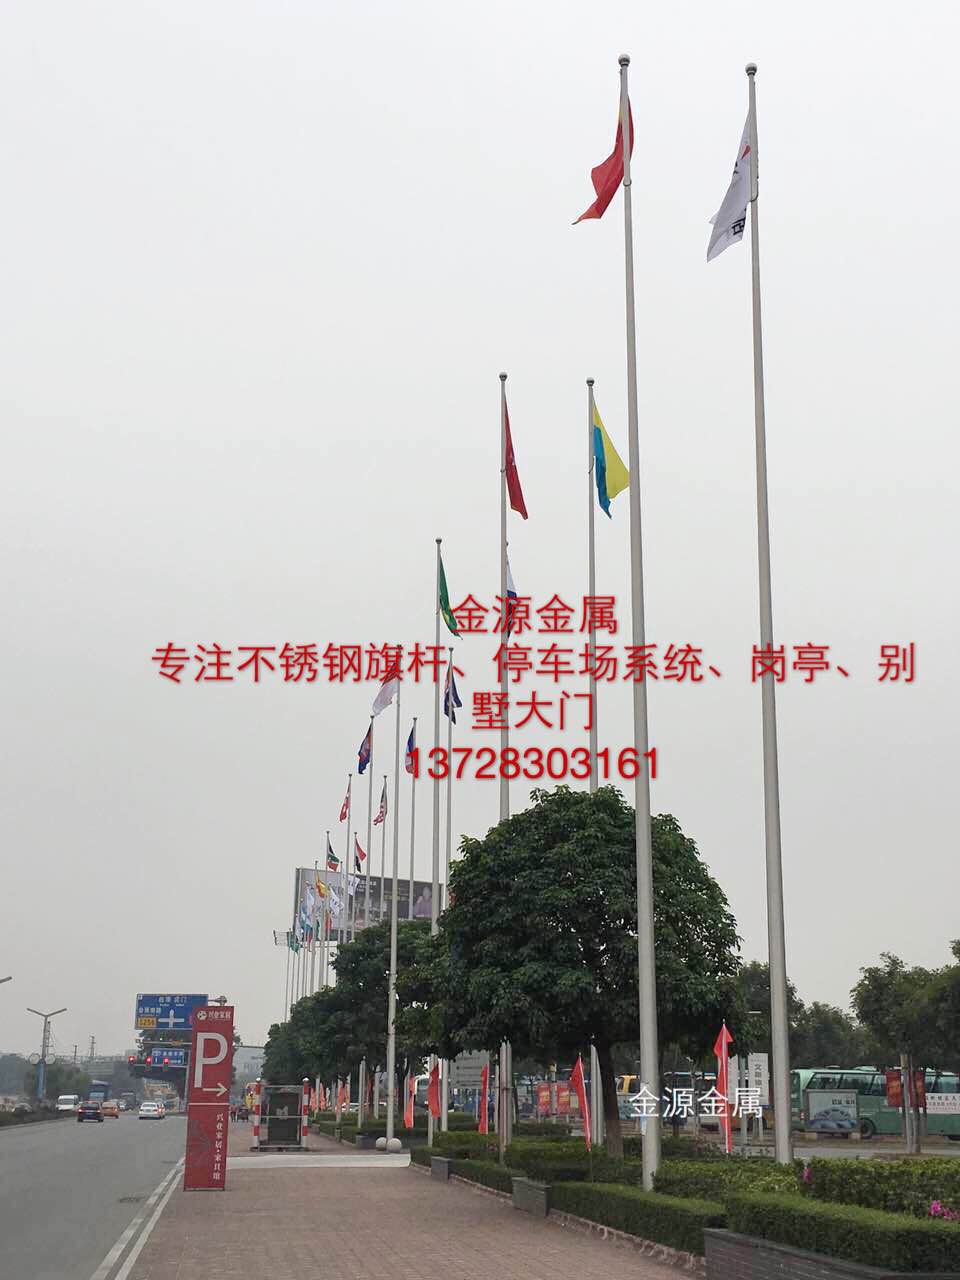 广州升旗仪式旗杆 锥形旗杆厂家定做图片